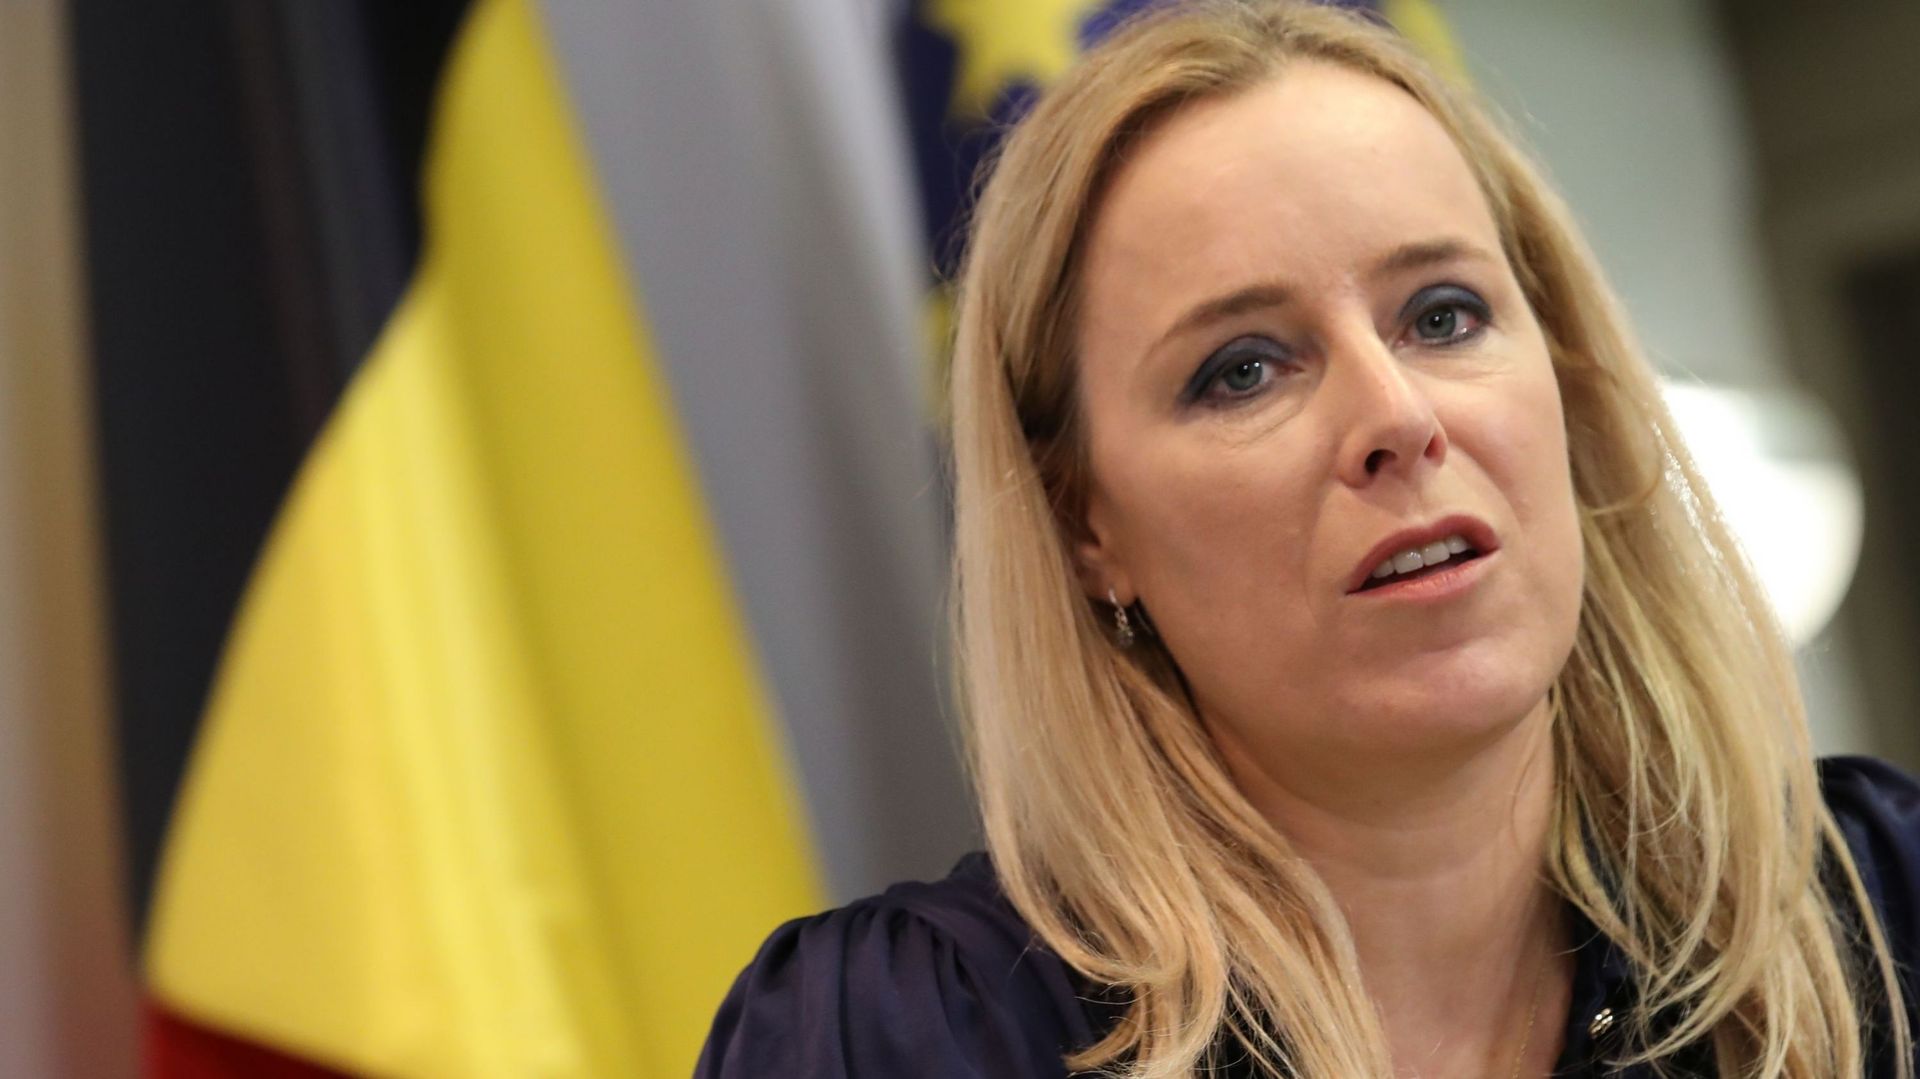 La secrétaire d'Etat au budget Eva De Bleeker (Open Vld)